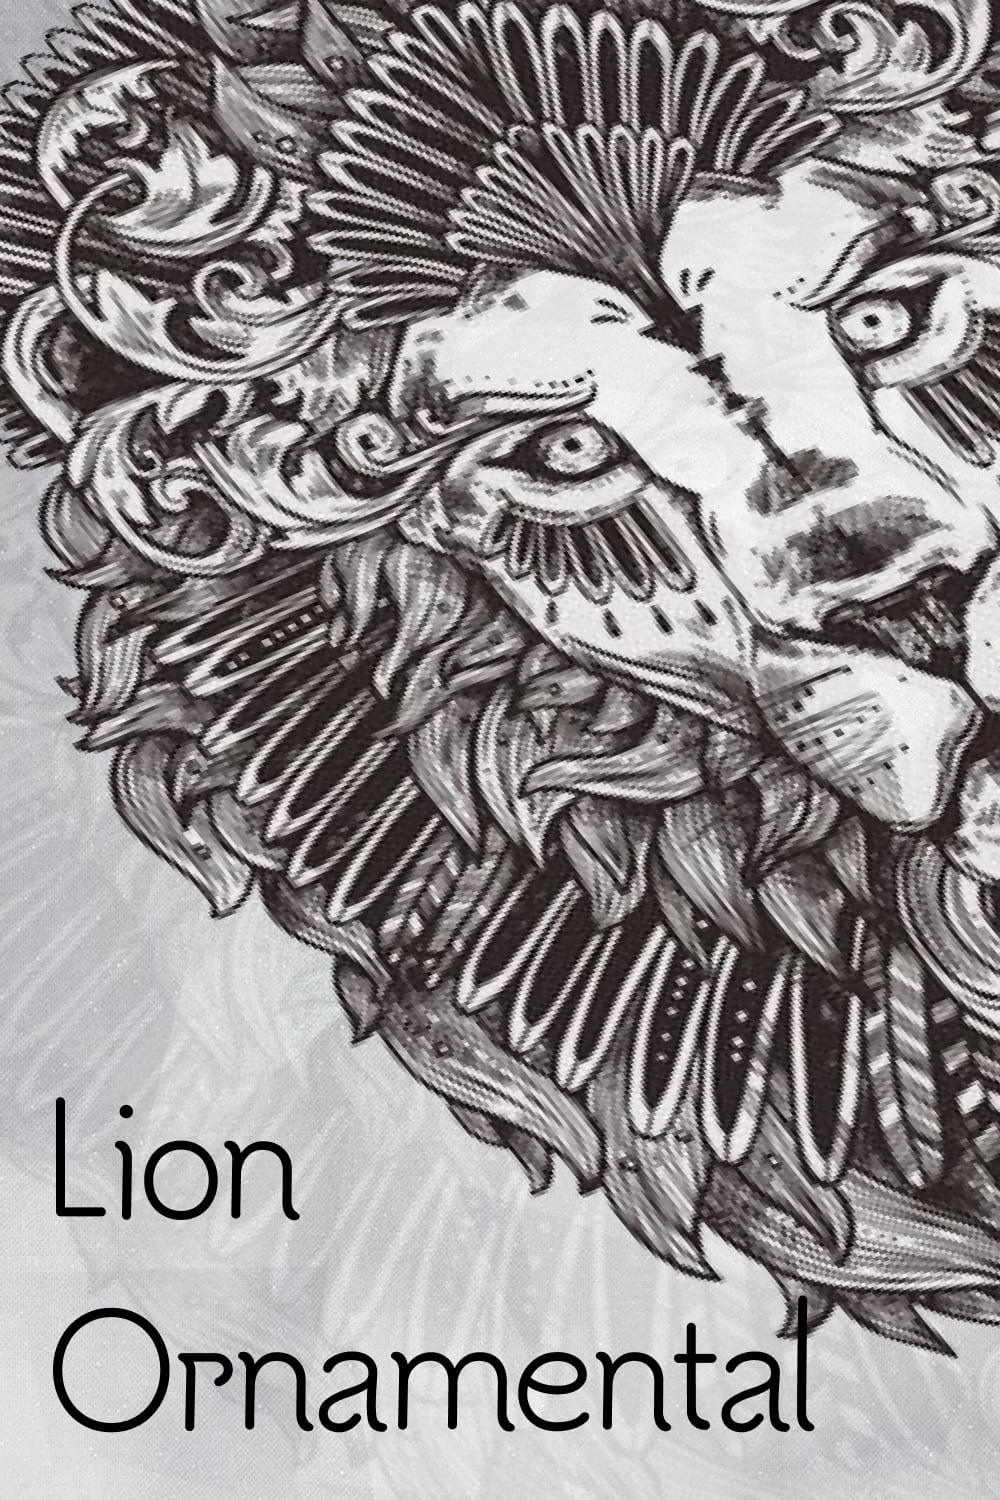 ornamental hand drawn lion 04